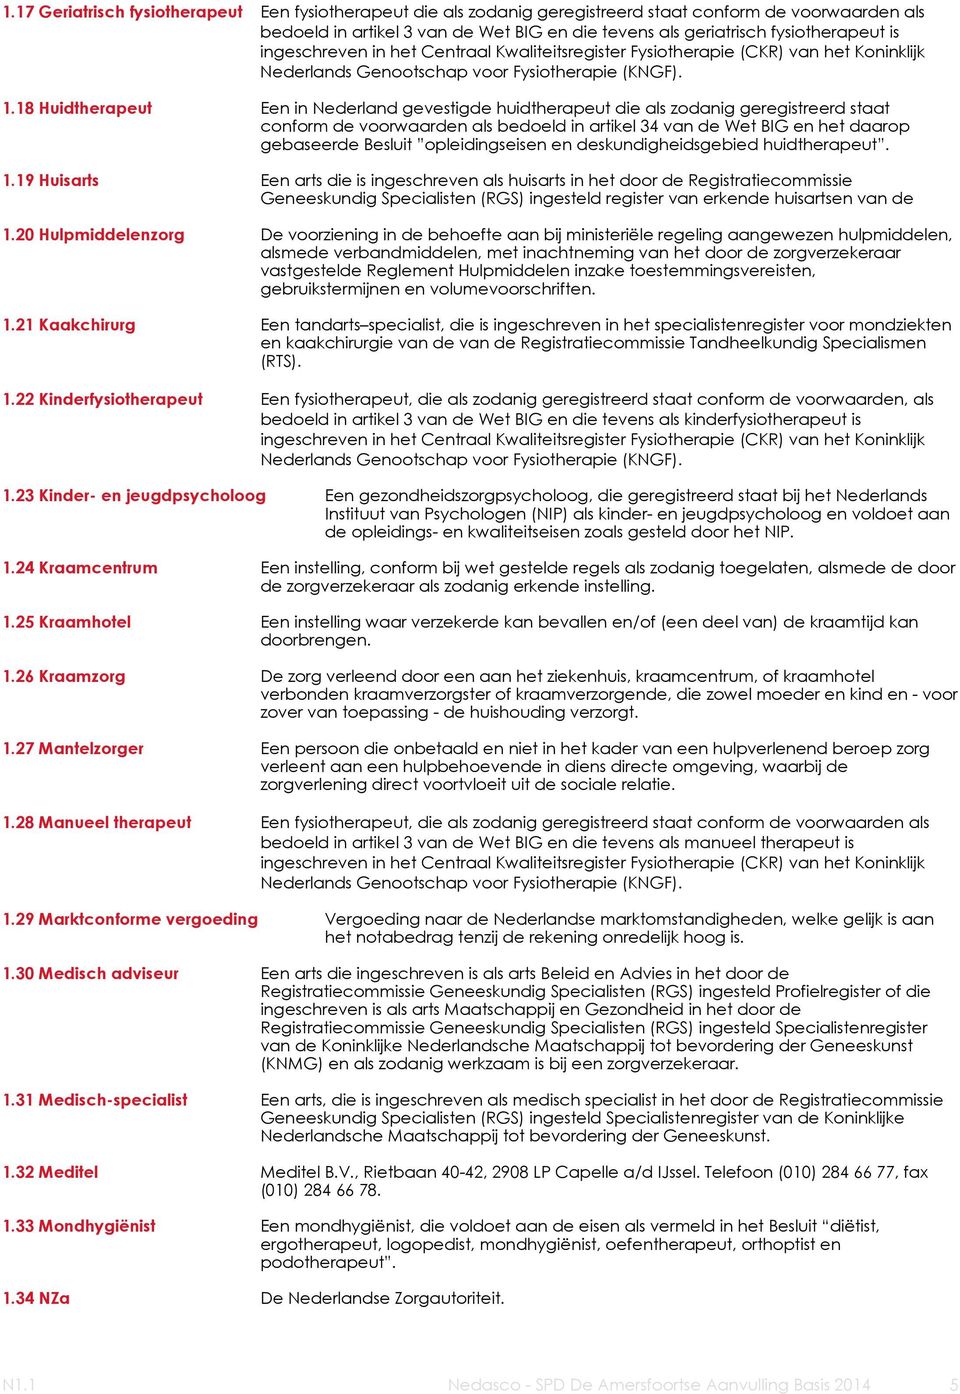 18 Huidtherapeut Een in Nederland gevestigde huidtherapeut die als zodanig geregistreerd staat conform de voorwaarden als bedoeld in artikel 34 van de Wet BIG en het daarop gebaseerde Besluit